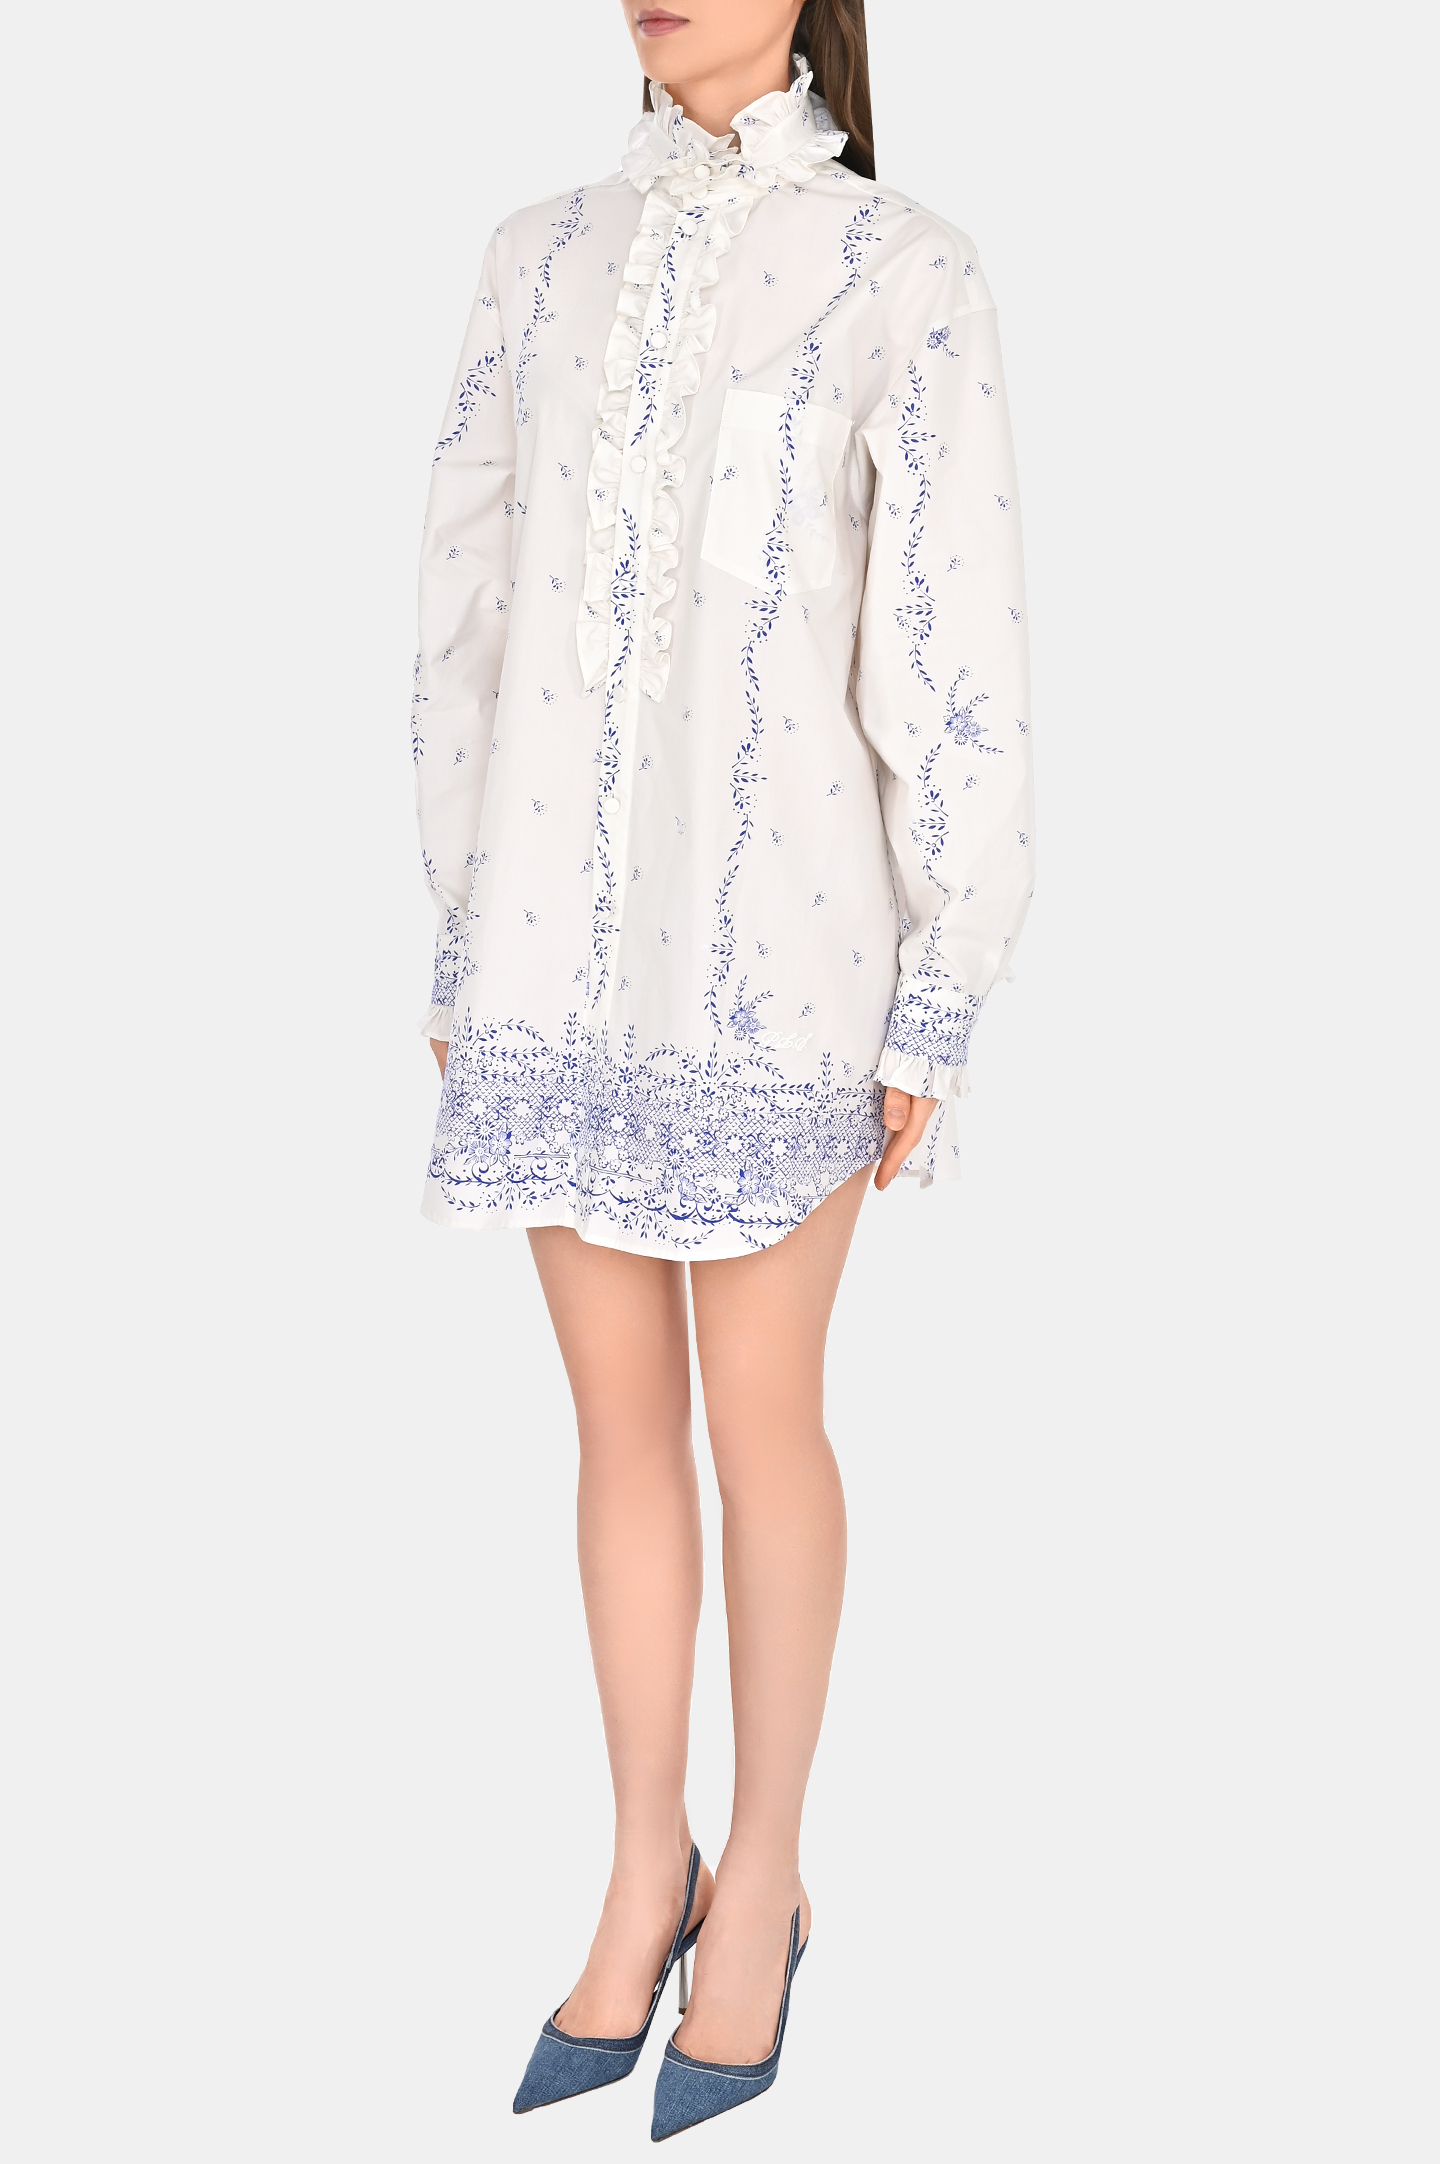 Платье-рубашка из хлопка с цветочным принтом PHILOSOPHY DI LORENZO SERAFINI A0453 737, цвет: Белый, Женский